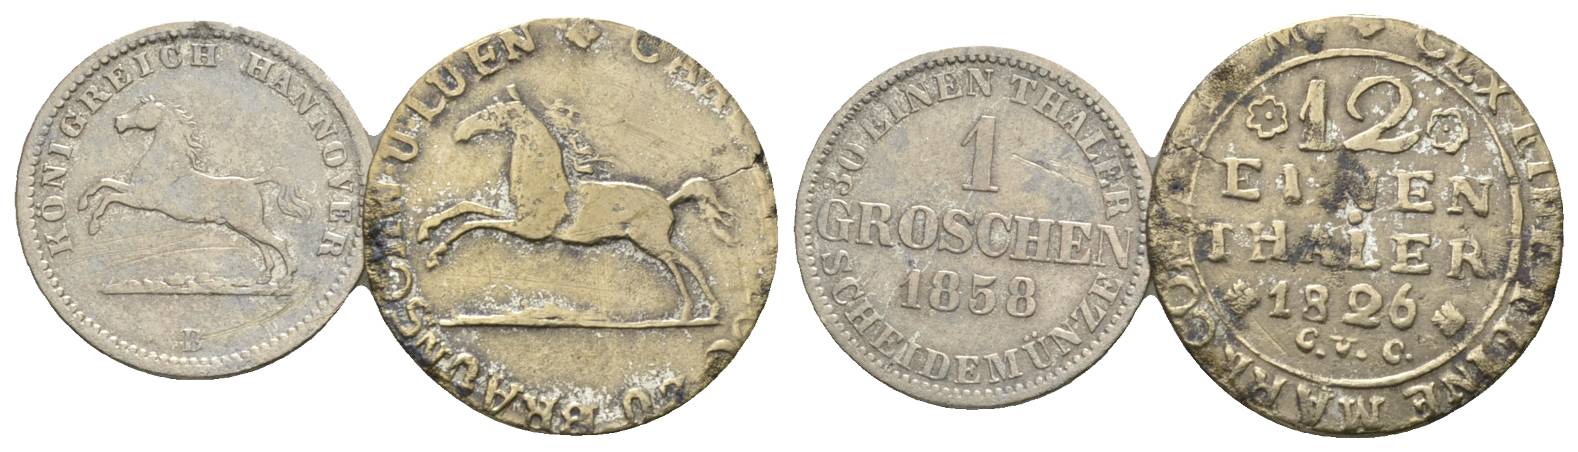  Altdeutschland, 2 Kleinmünzen 1858/1826   